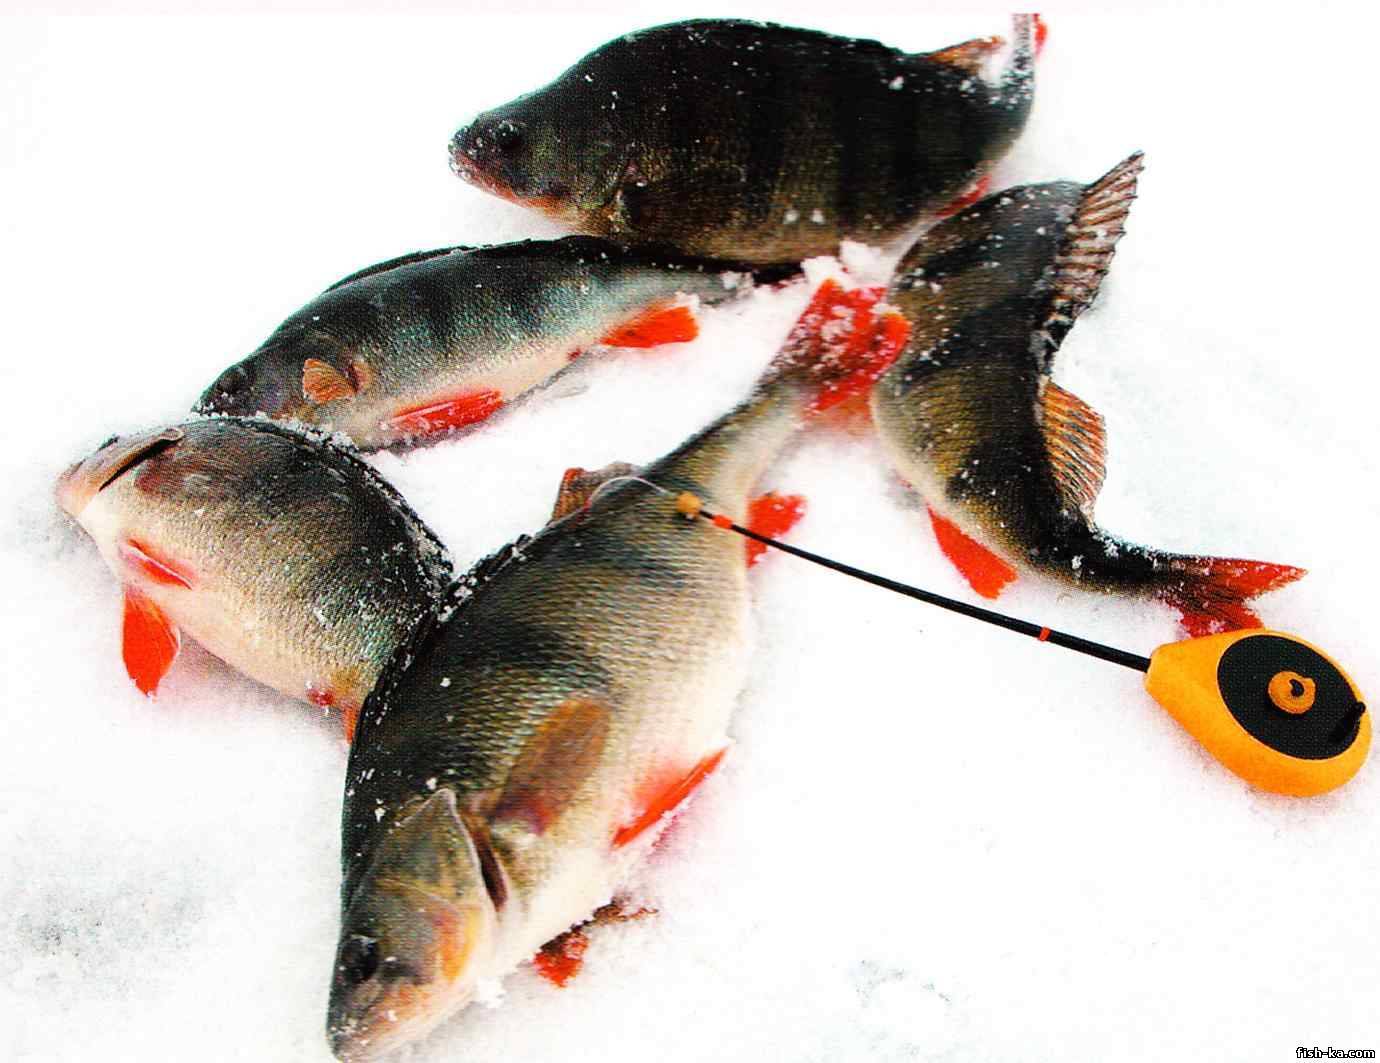 Подбор снастей и выбора эффективной тактики для рыбалки в глухозимье - читайте на сatcher.fish